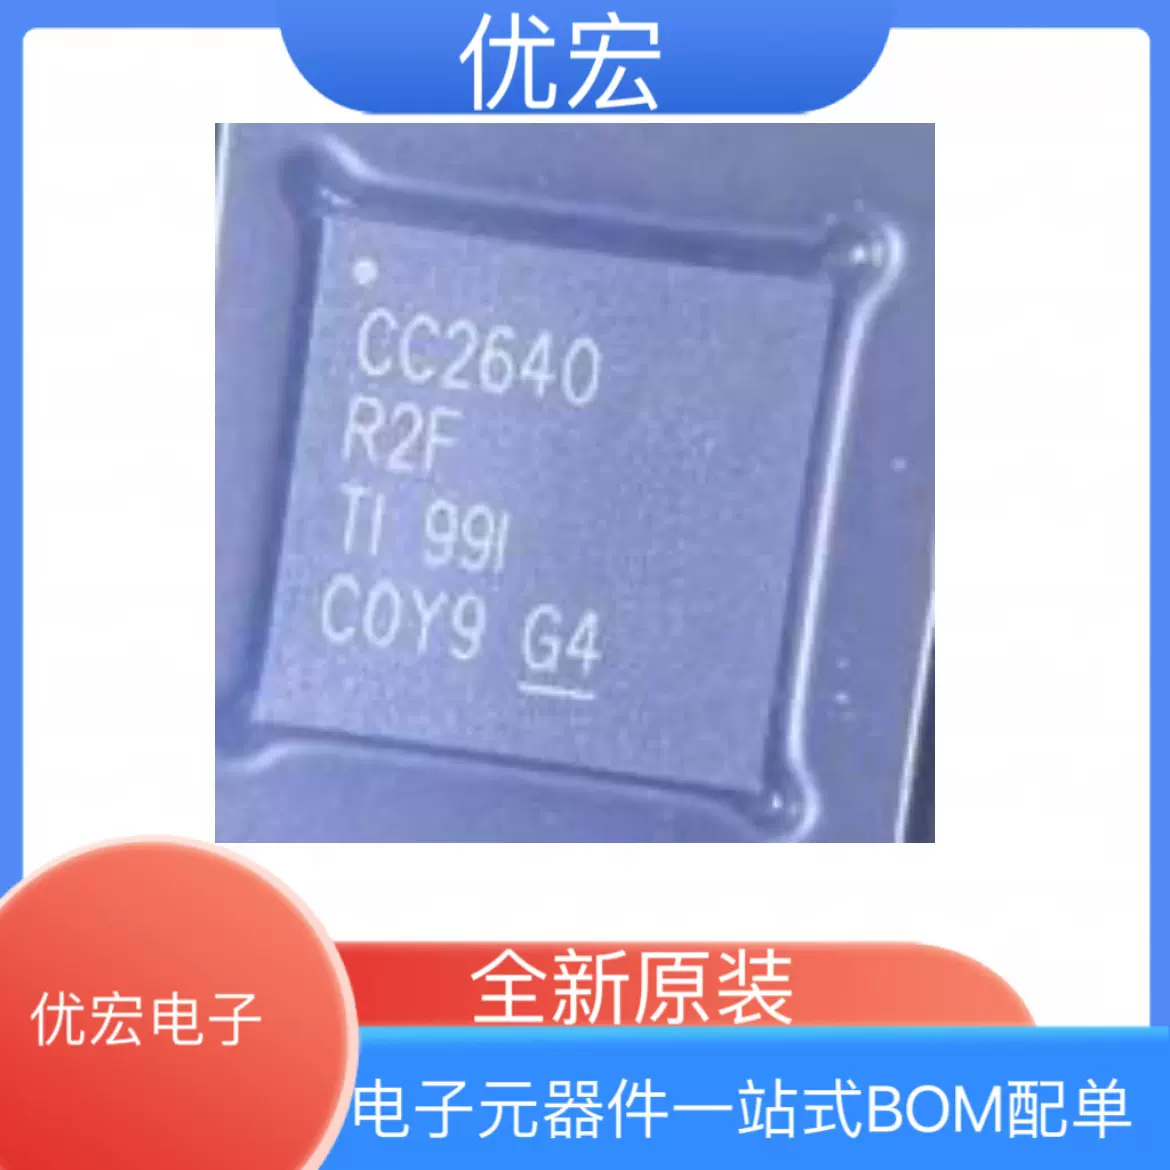 全新原装CC2640R2FRGZR 丝印CC2640R2F 封装QFN48 射频控制芯片-Taobao 